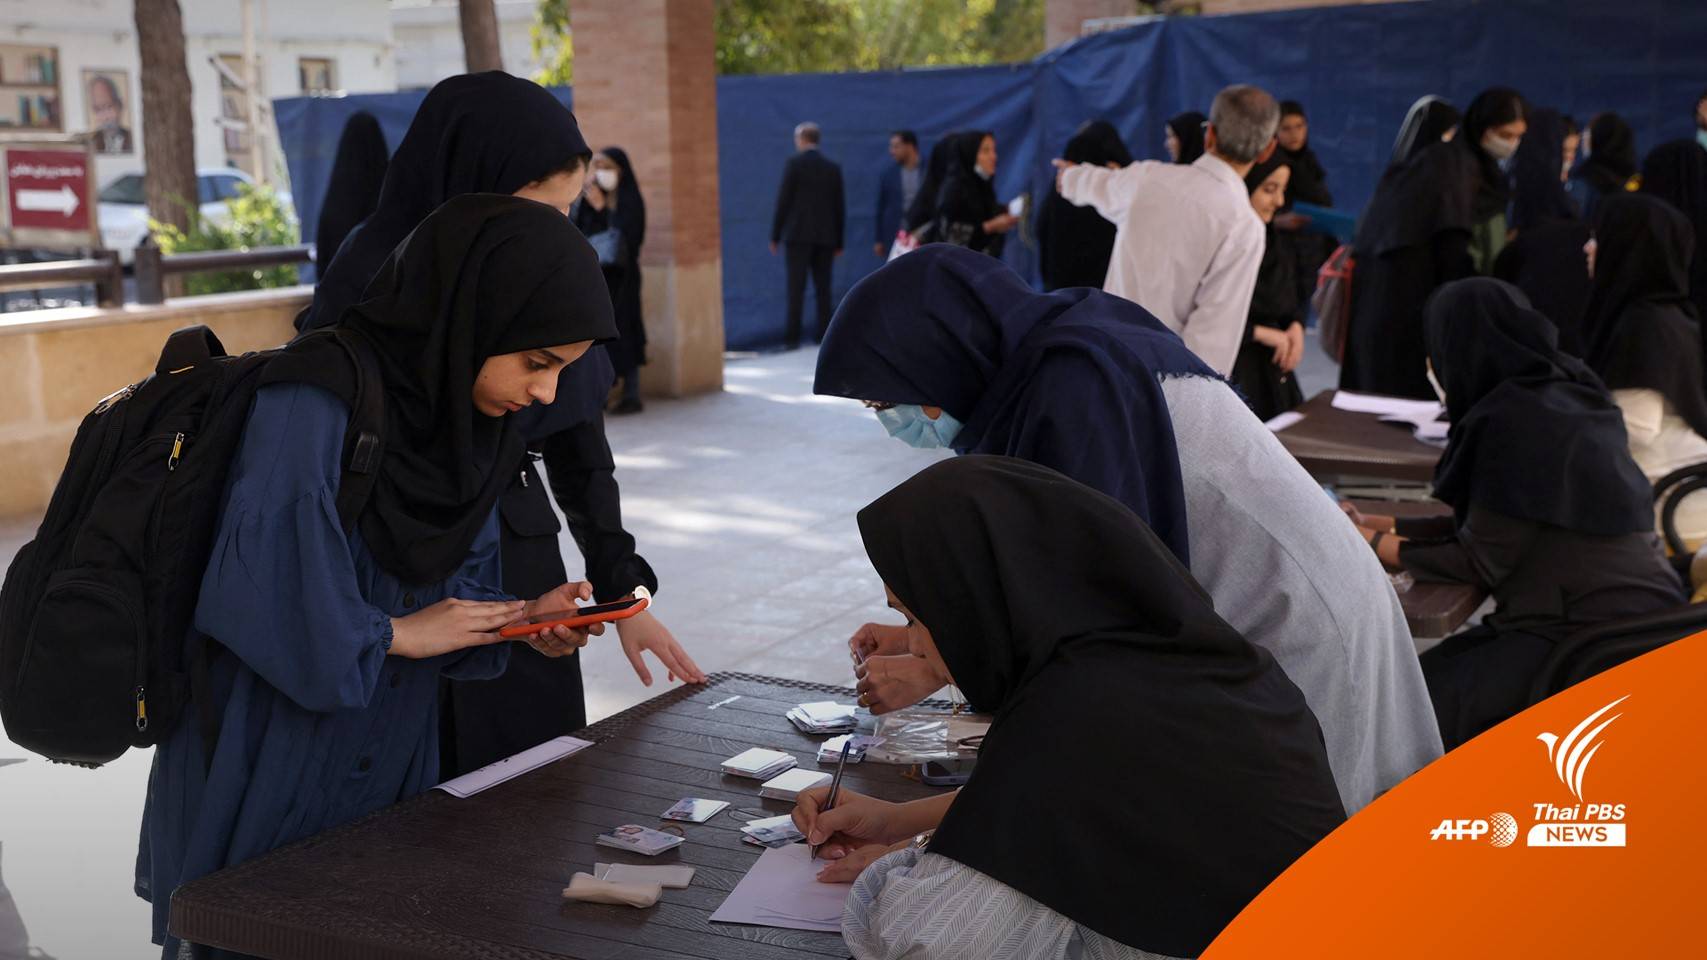 ผู้นำสูงสุดอิหร่าน ประกาศ "ไม่ให้อภัย" ผู้วางยาเด็กนักเรียนหญิงทั่วประเทศ